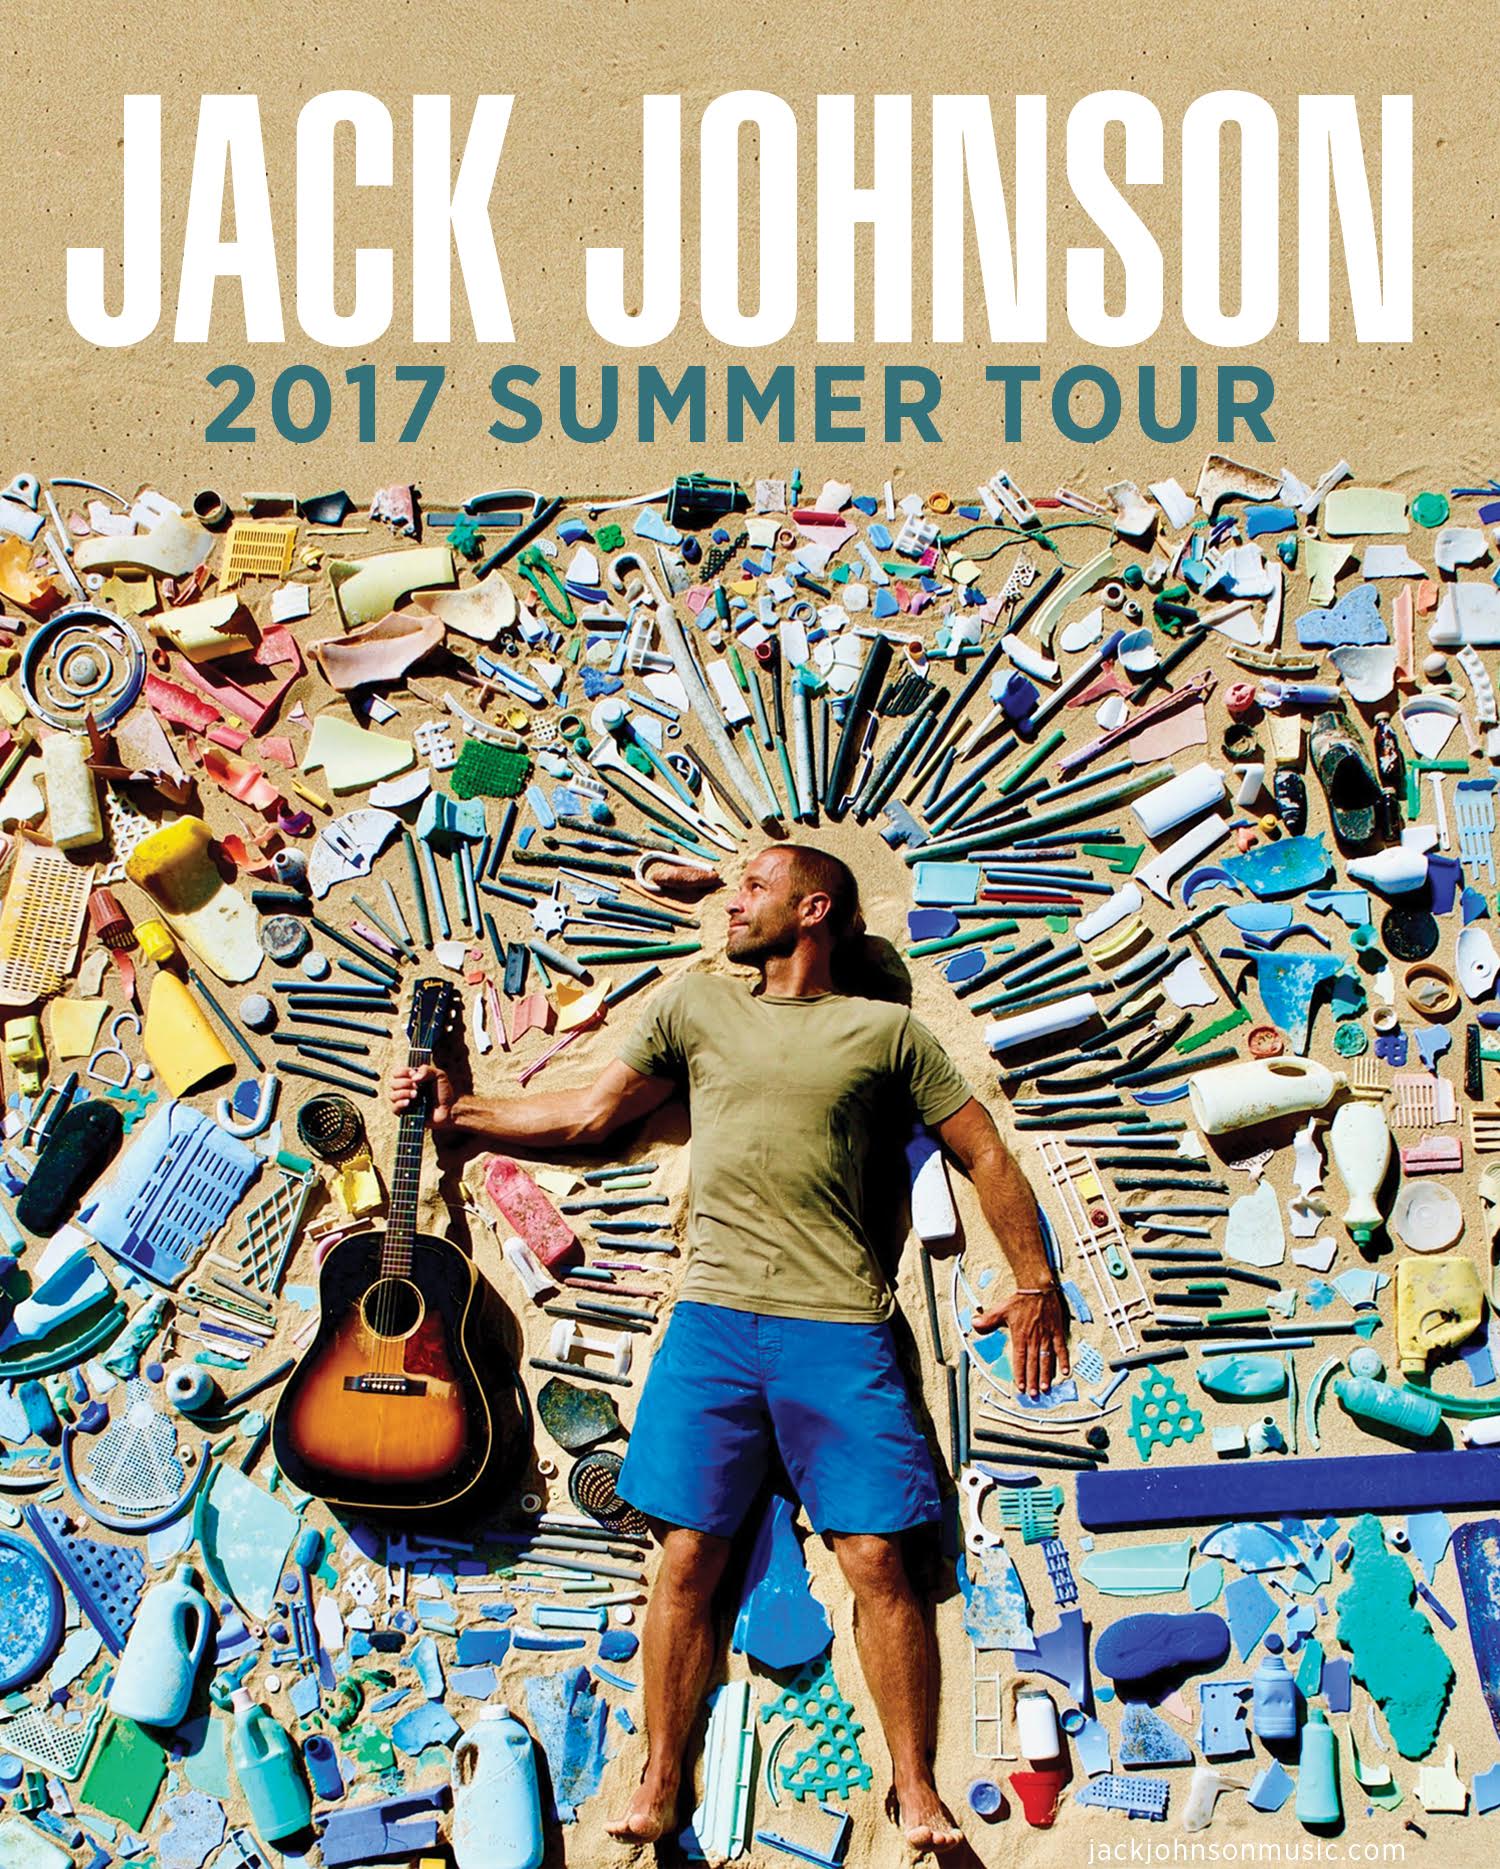 Presale Codes for Jack Johnson Tour TM Verified Fan Codes & Unique